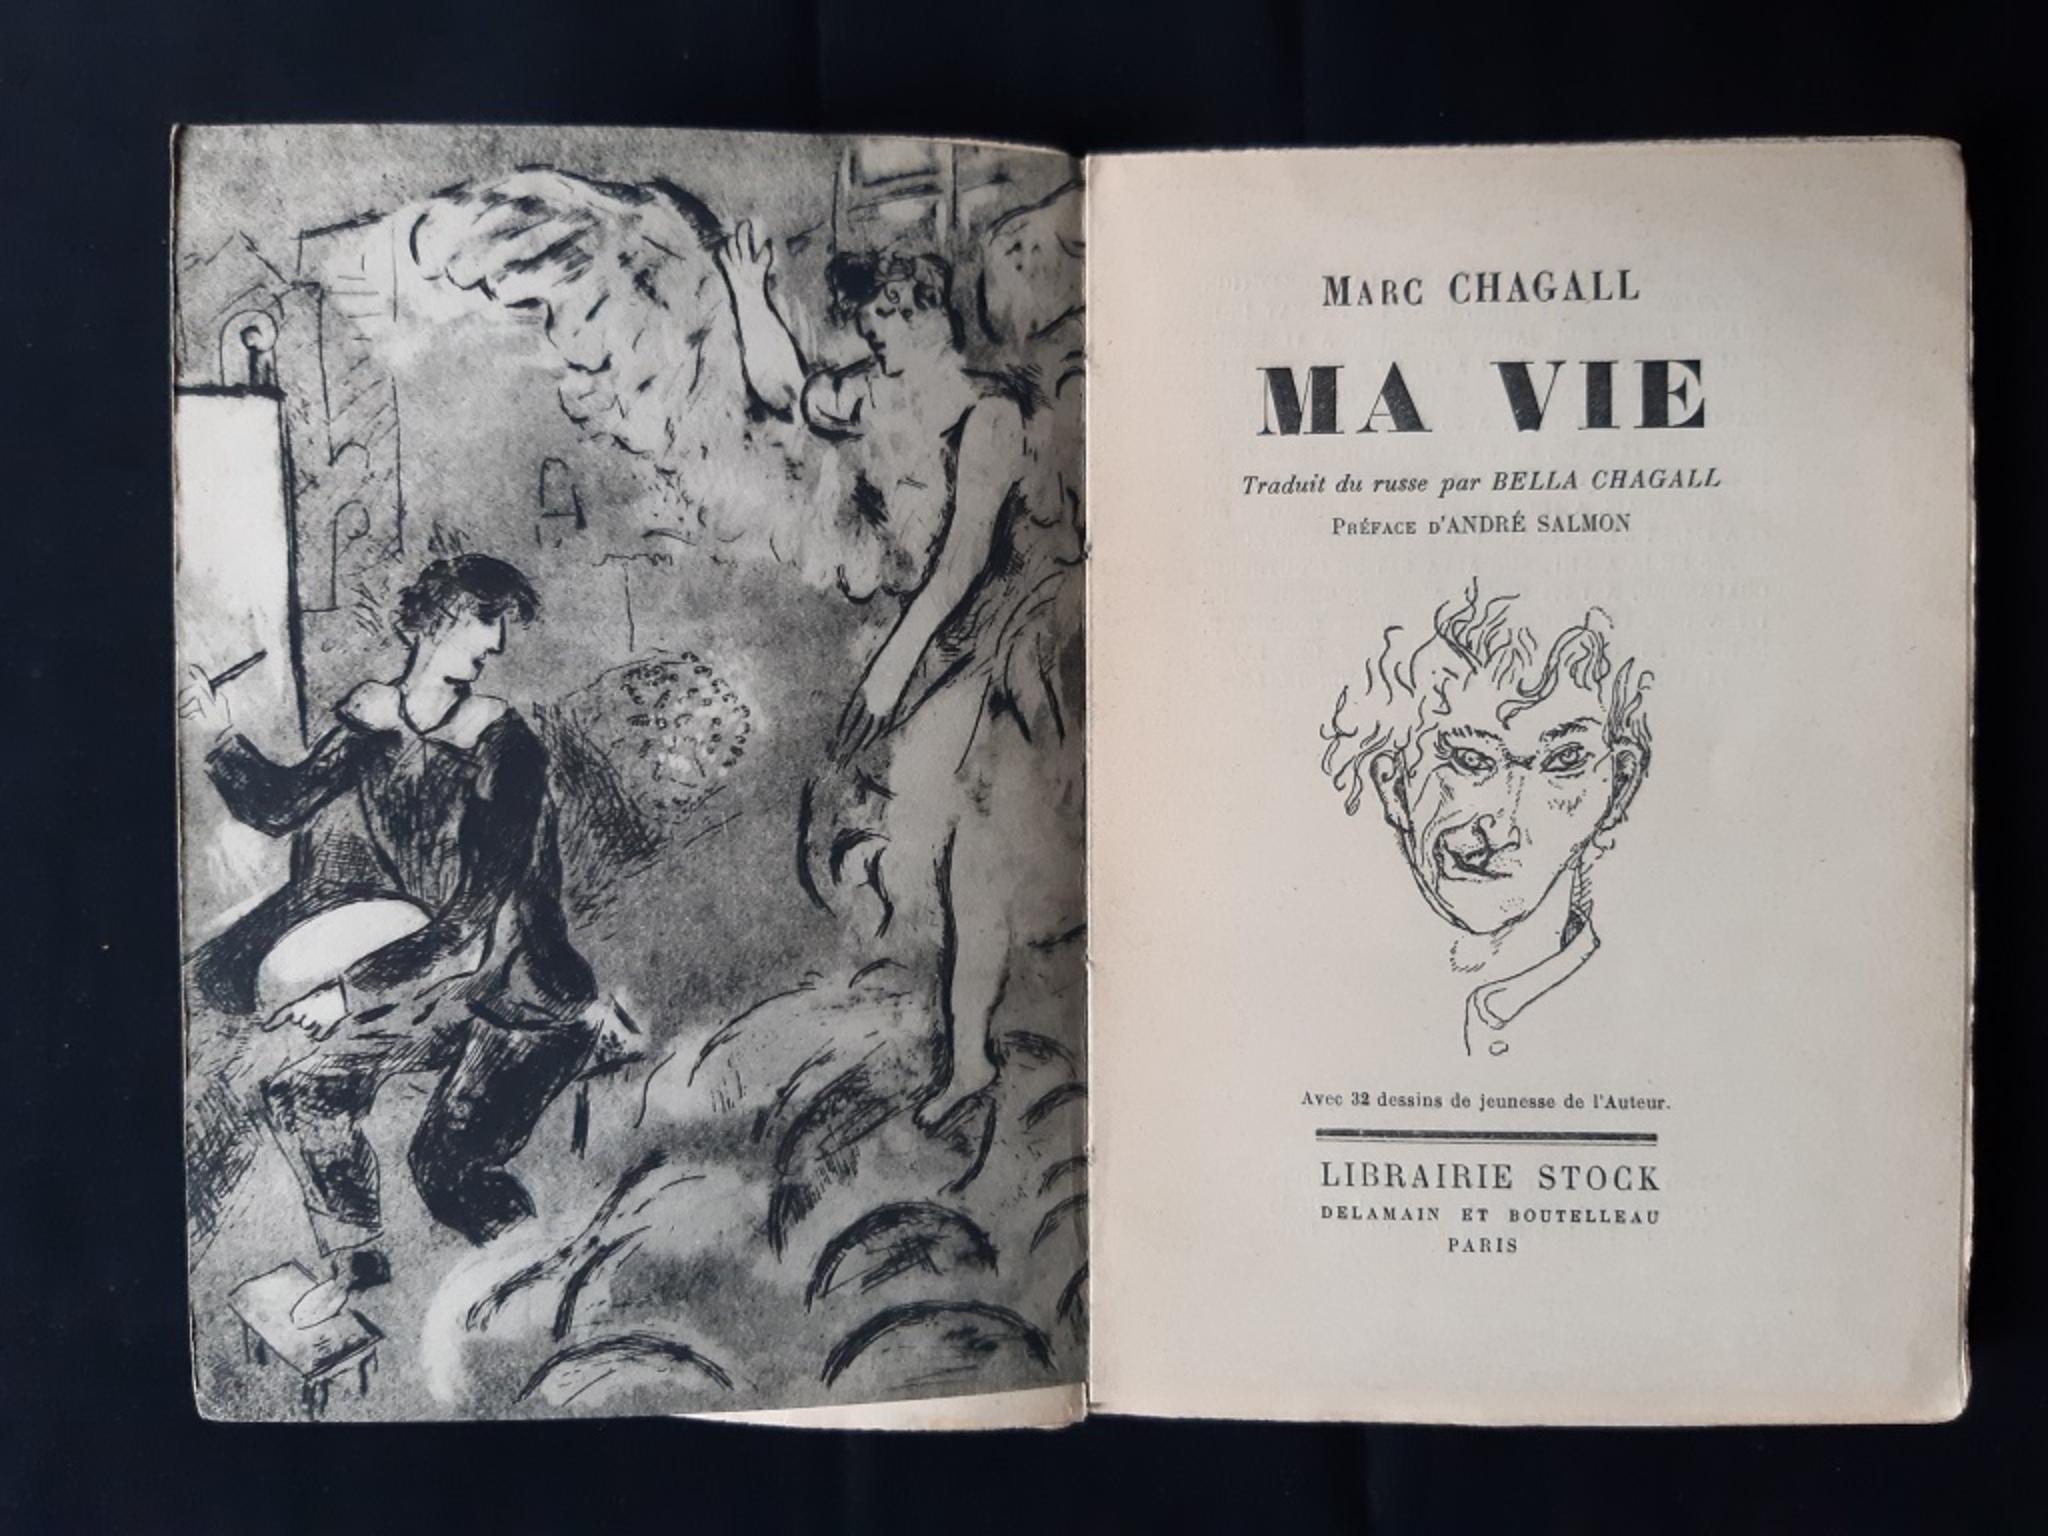 Livre rare illustré par Marc Chagall - 1931